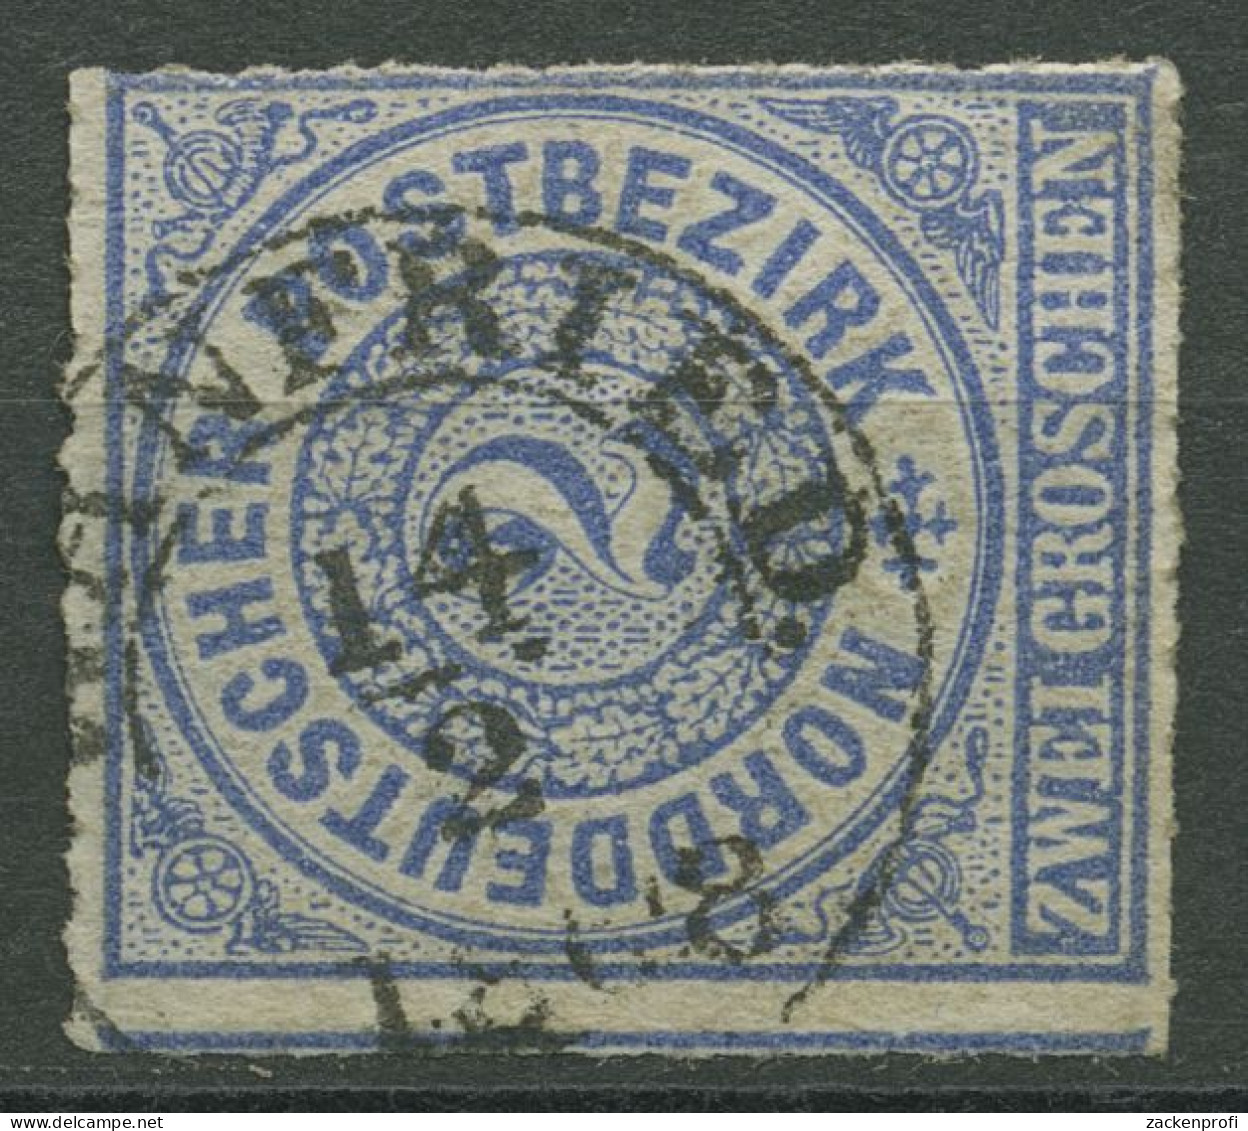 Norddeutscher Postbezirk NDP 1868 2 Groschen 5 Mit T&T-K2-Stempel WANFRIED - Gebraucht